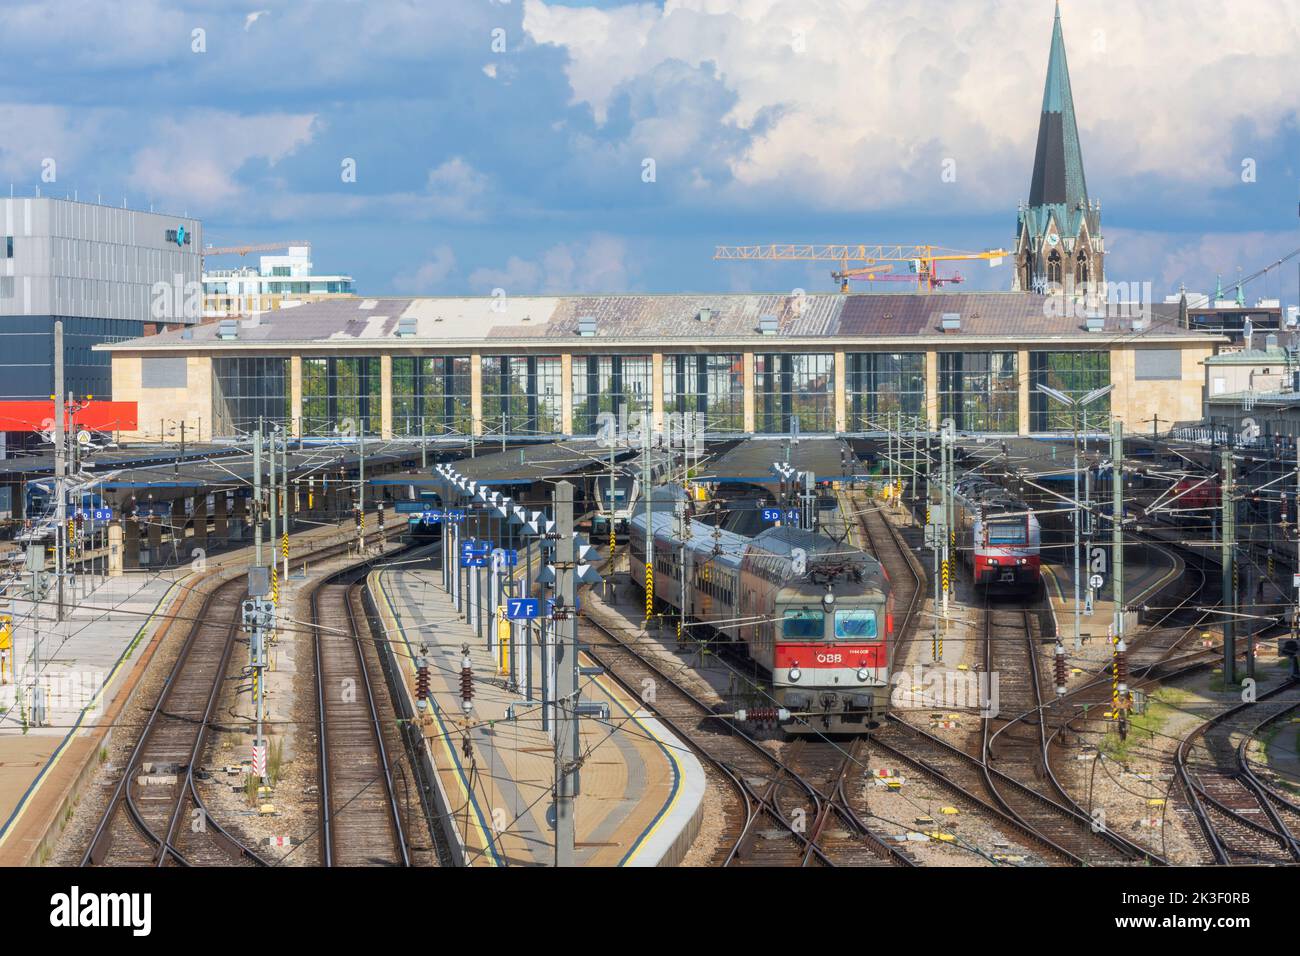 Wien, Vienna: Stazione ferroviaria Westbahnhof, treno locale nel 15. Rudolfsheim-Fünfhaus, Vienna, Austria Foto Stock